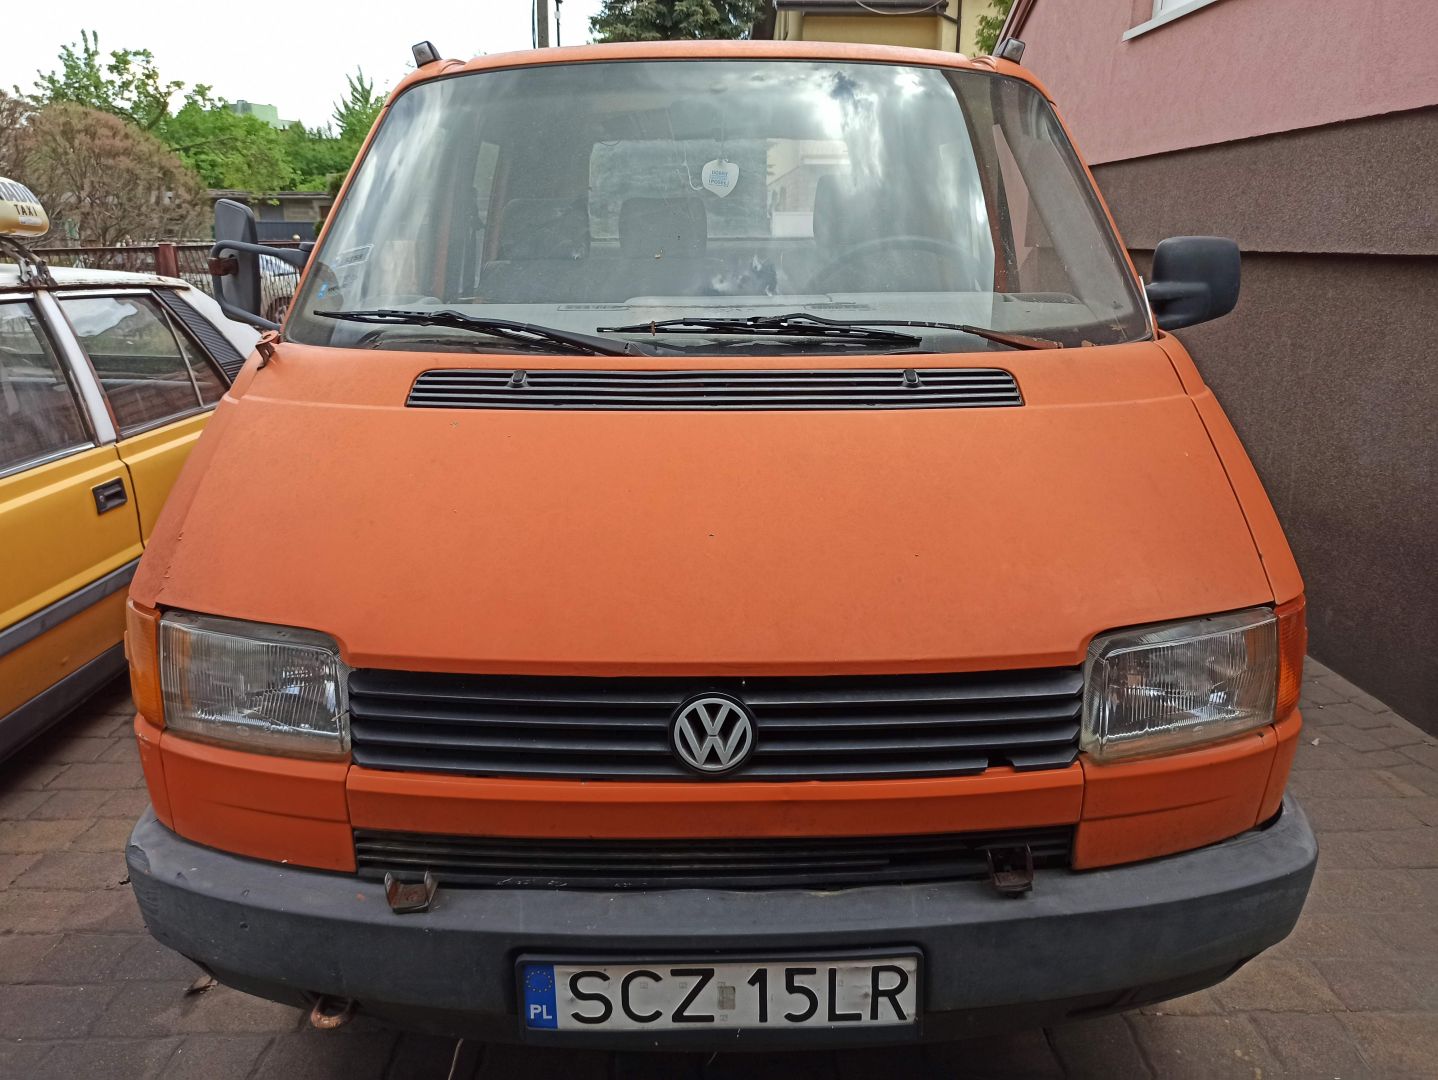 Kupię Volkswagen Transporter T4 do kasacji, zgnite, zepsute, bez opłat częstochowa - Zdjęcie 1